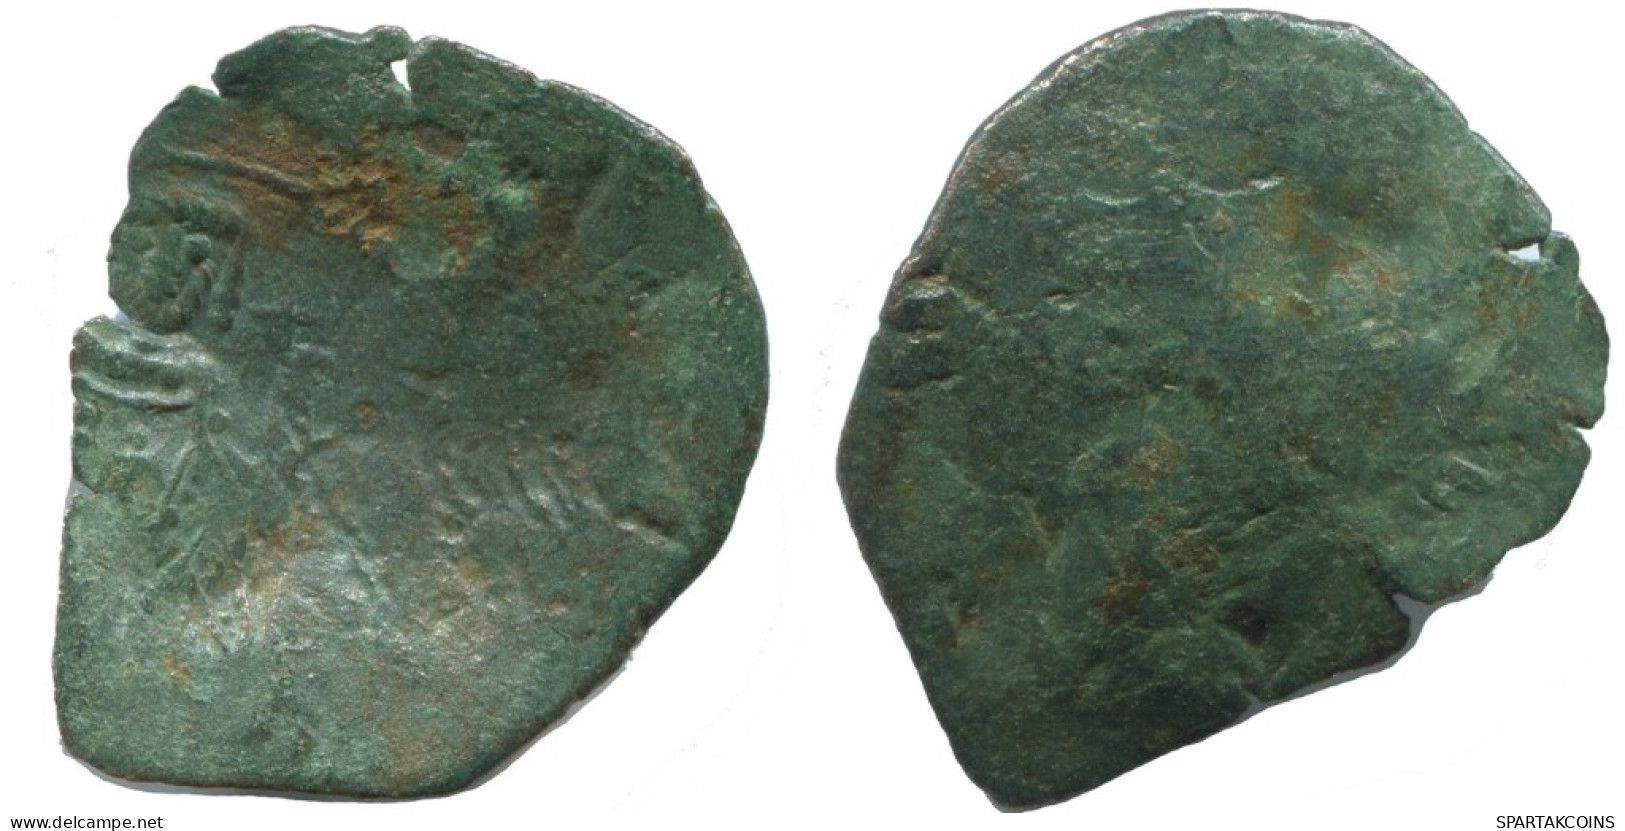 TRACHY BYZANTINISCHE Münze  EMPIRE Antike Authentisch Münze 1.4g/20mm #AG658.4.D.A - Byzantinische Münzen